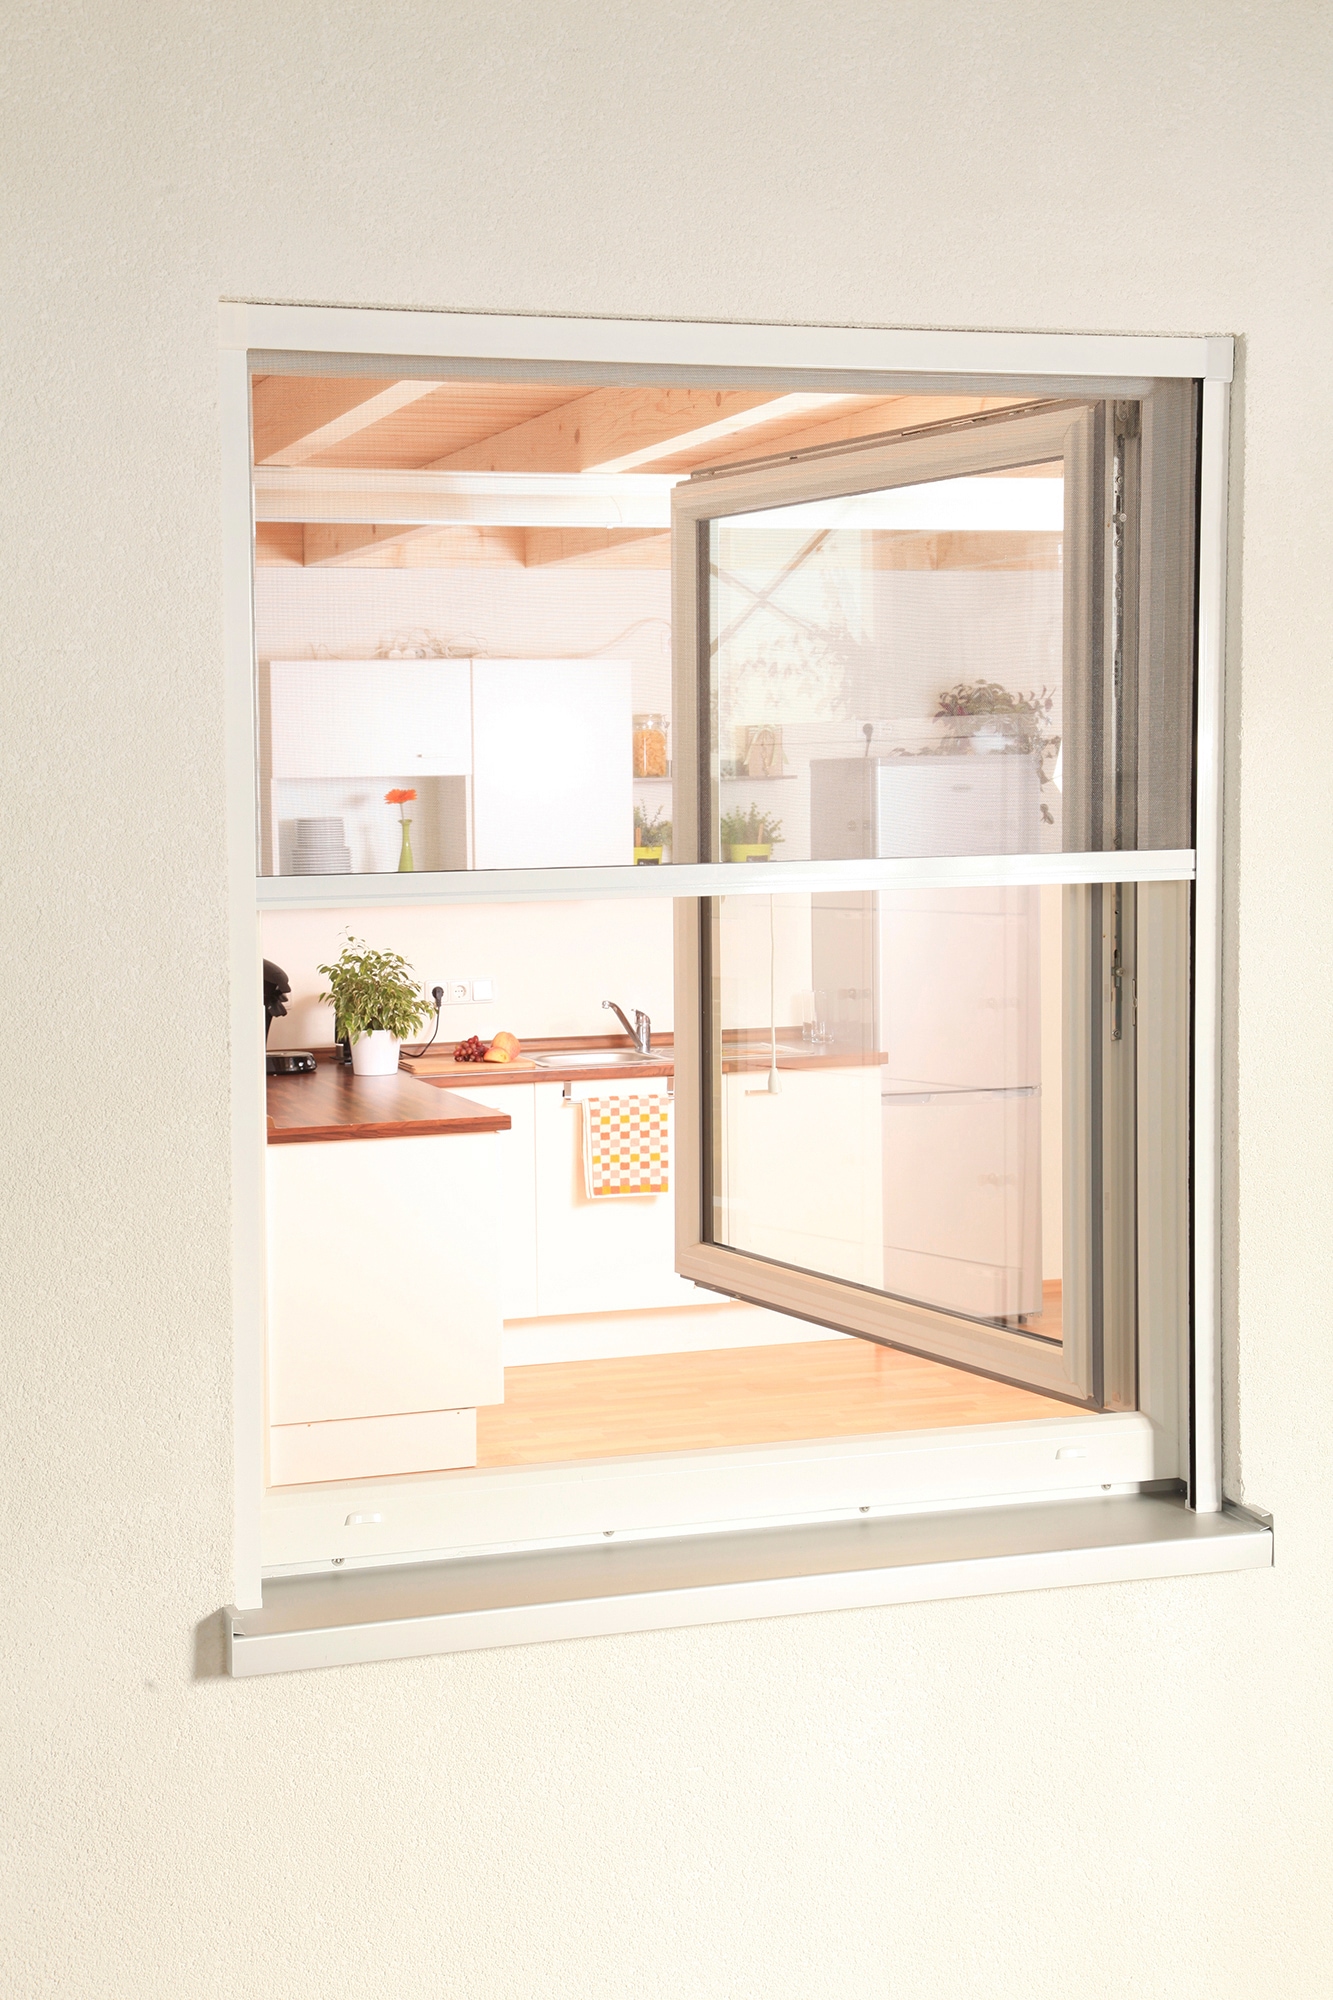 hecht international Insektenschutzrollo "SMART", transparent, für Fenster, weiß/anthrazit, BxH: 80x160 cm